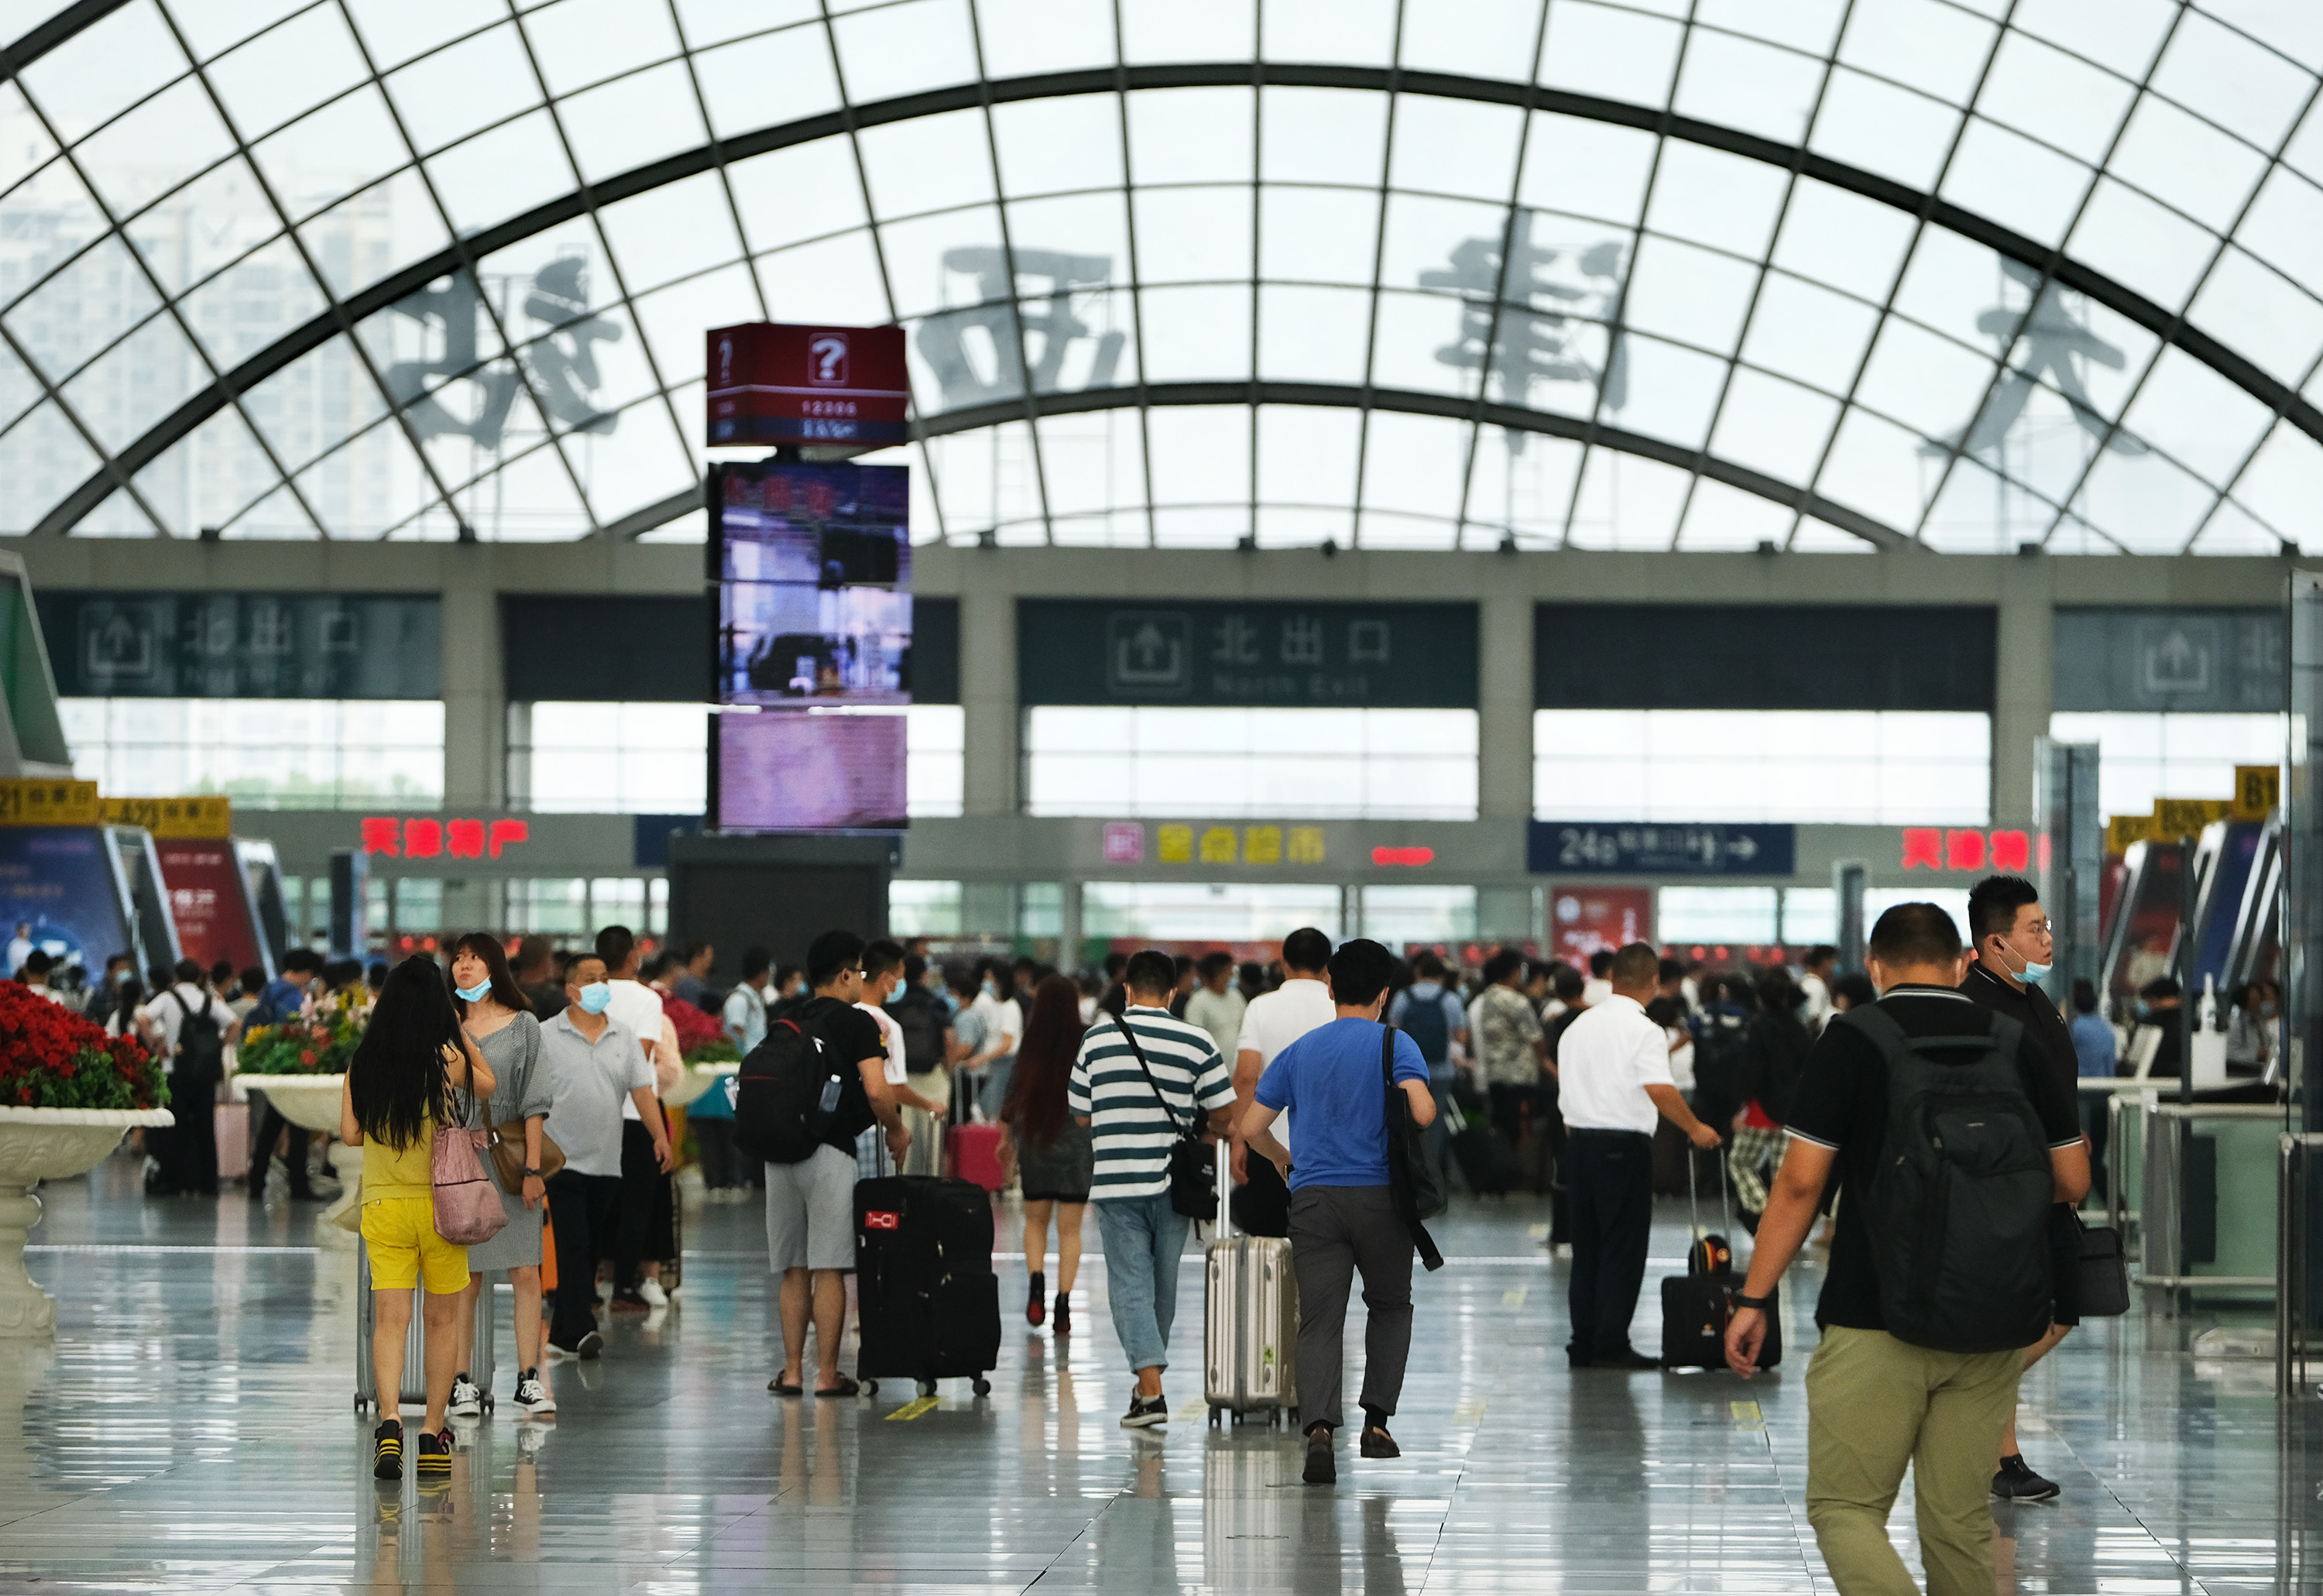 8月31日,铁路天津西站候车大厅旅客正在等候乘车.摄影:杨宝森